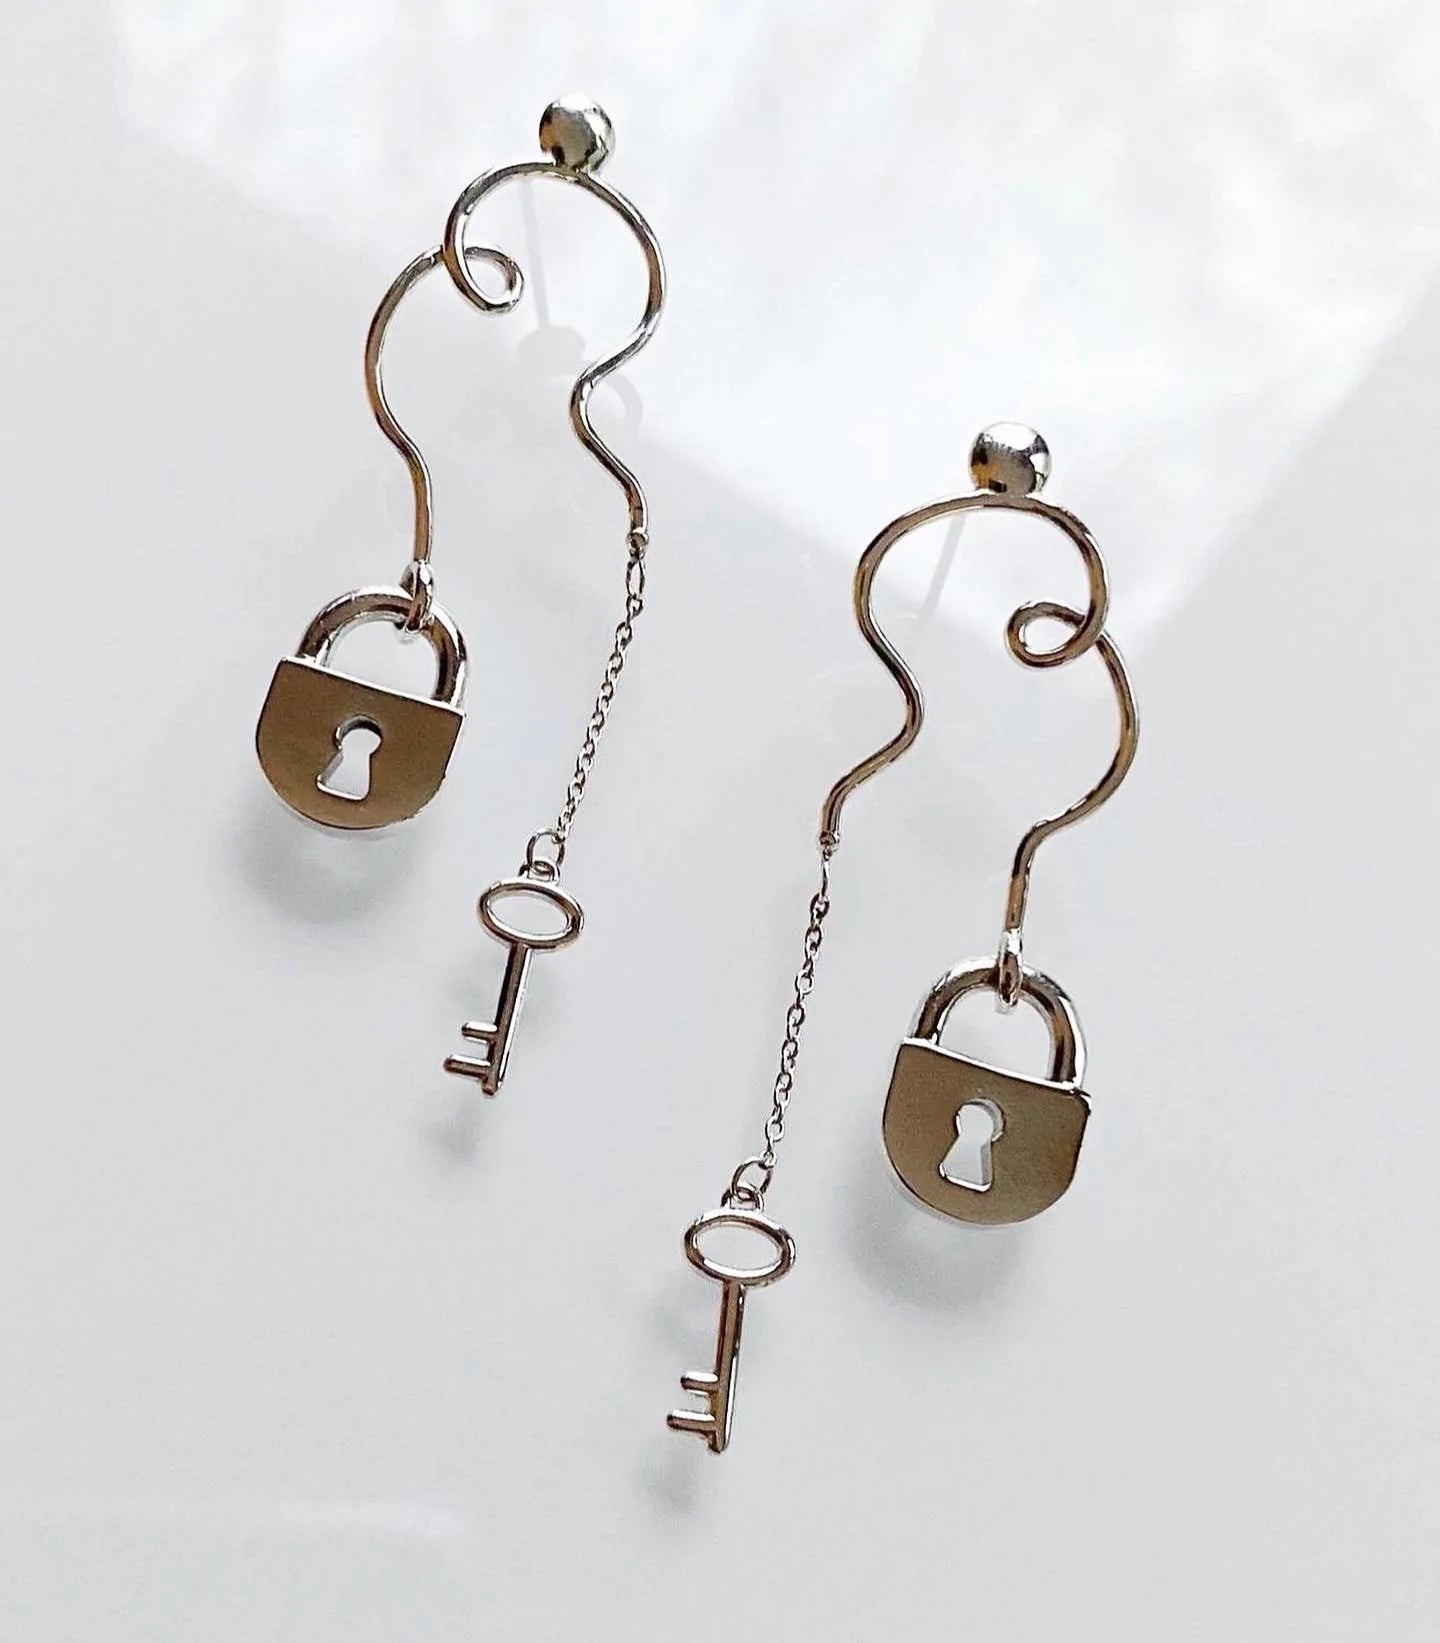 1/6 Ctw Heart Lock & Key Charm Round Cut Diamond Earrings in | Ross Elliott  Jewelers | Terre Haute, IN